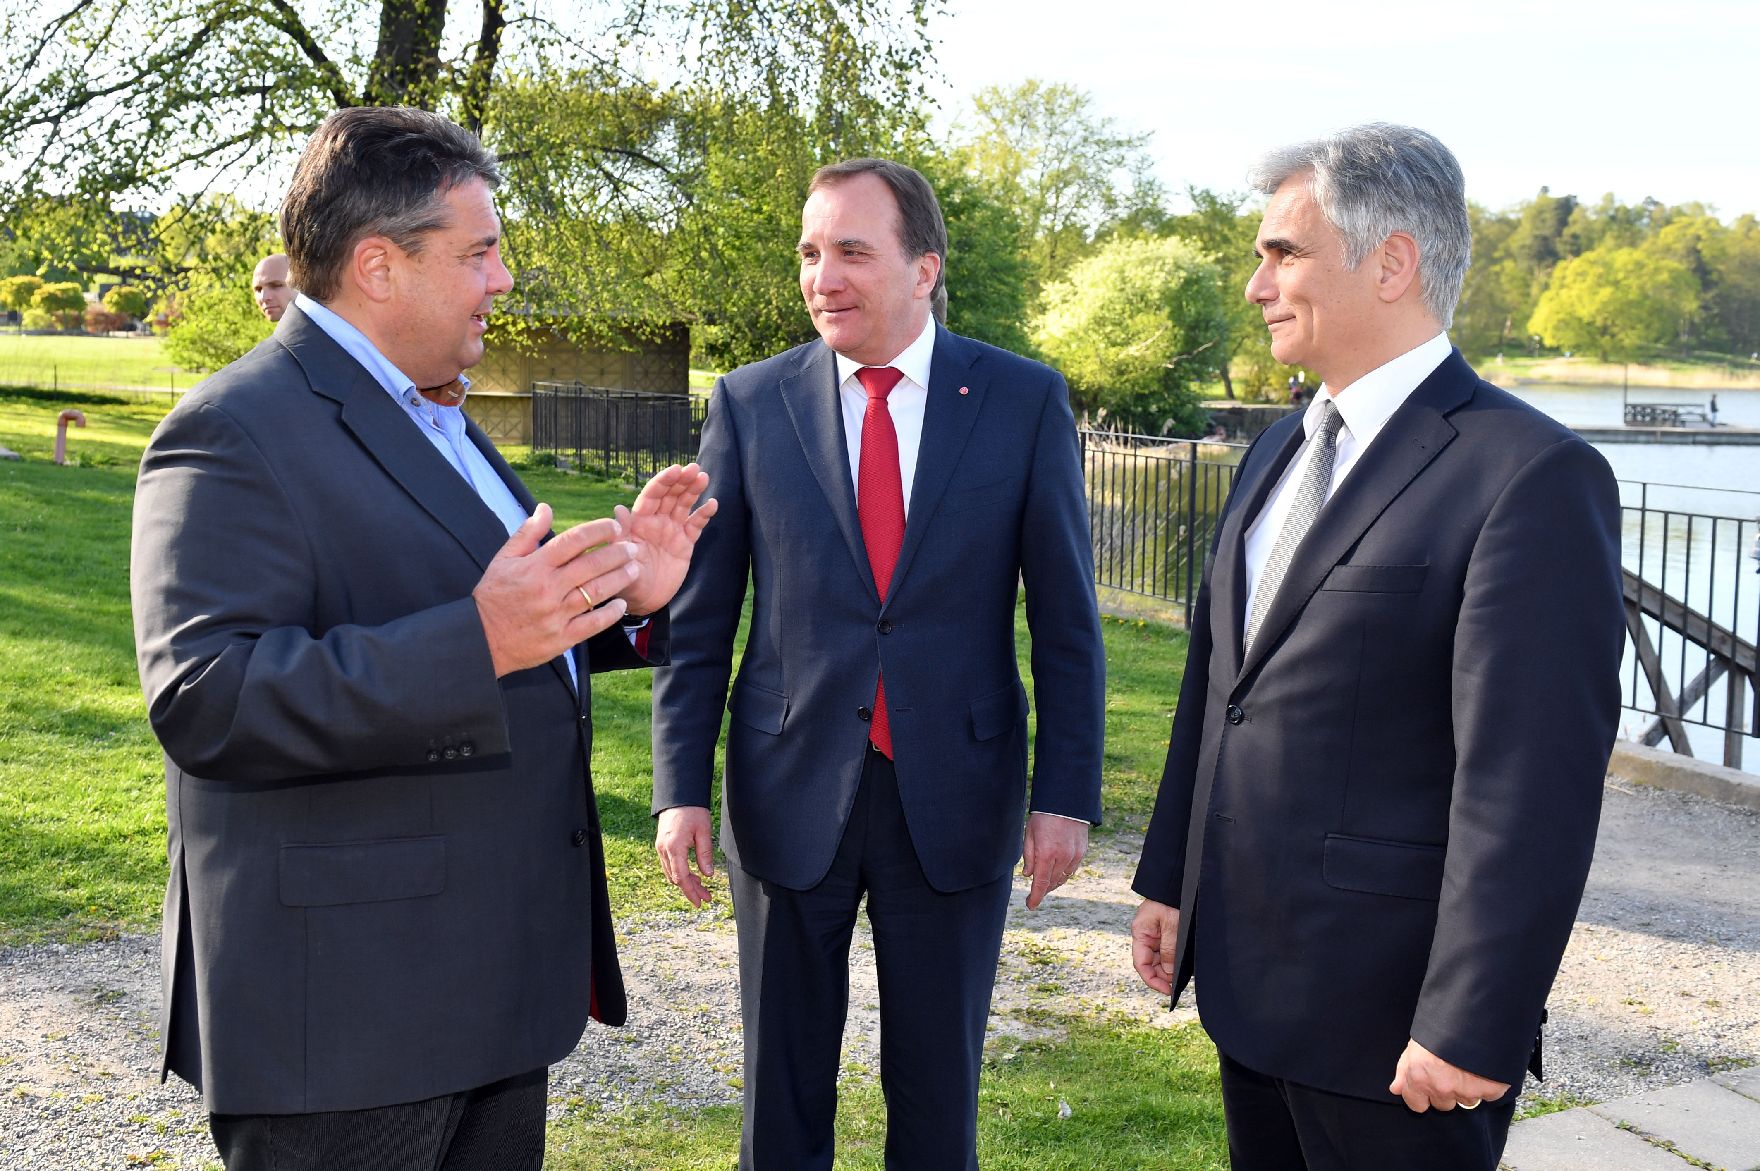 Am 8. Mai 2016 fand ein Treffen von Bundeskanzler Werner Faymann (r.) mit dem schwedischen Ministerpräsidenten Stefan Löfven (m.) und dem deutschen Vizekanzler Sigmar Gabriel (l.) in Stockholm statt.